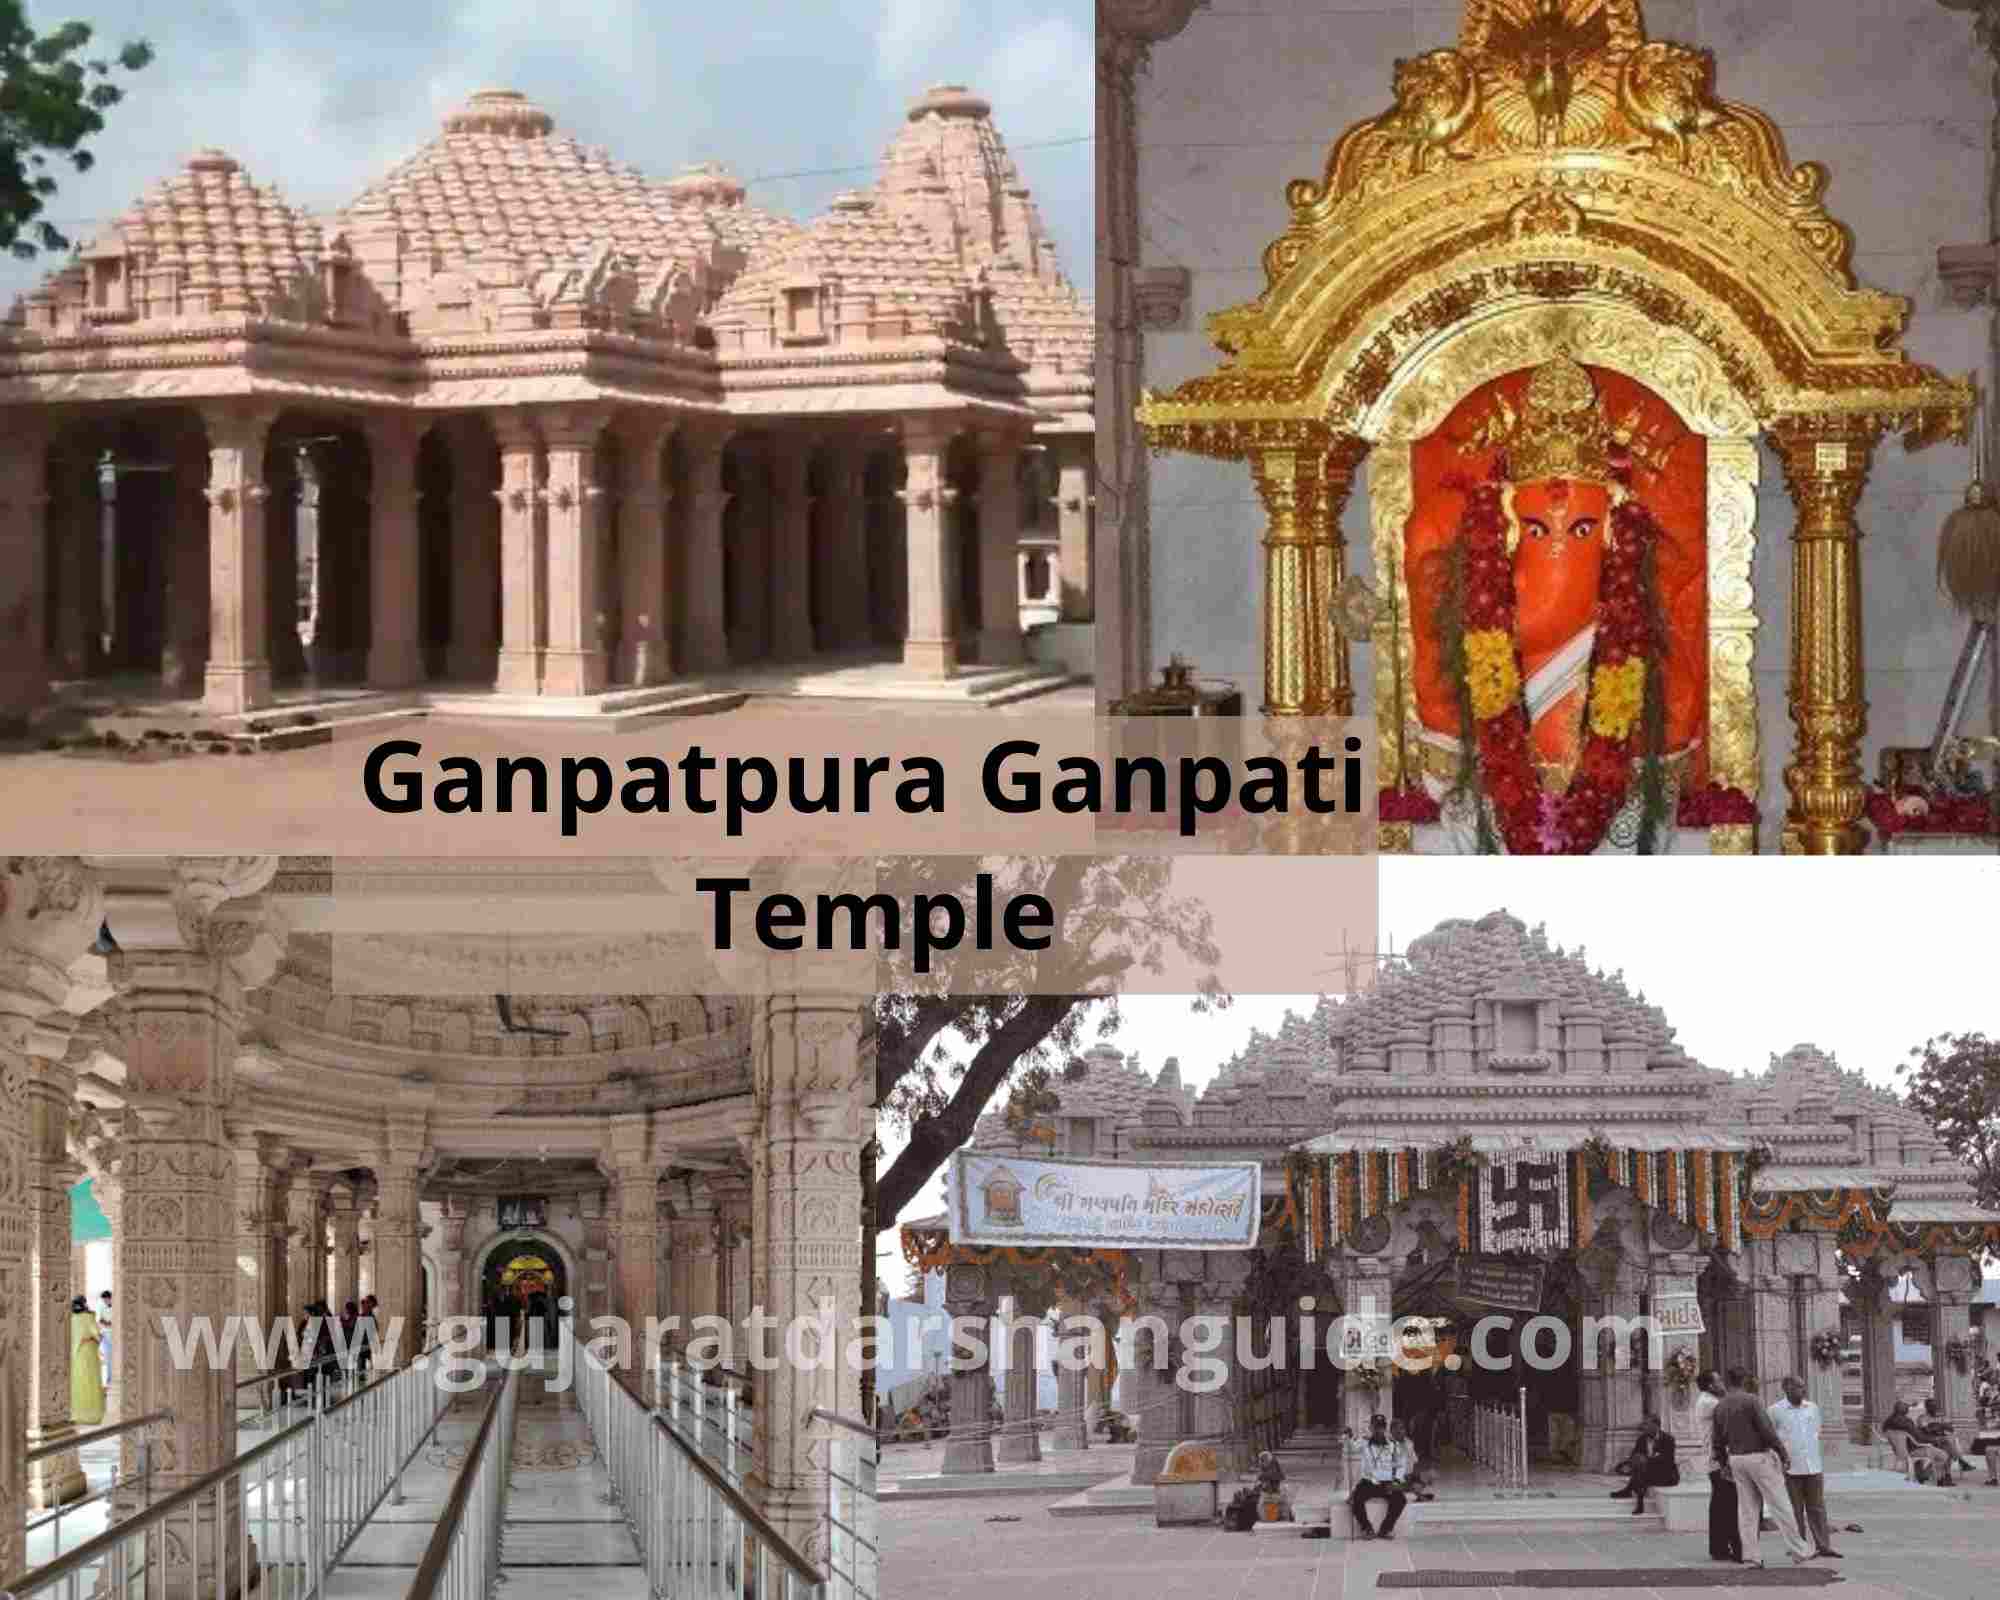 Ganpatpura Ganpati Temple